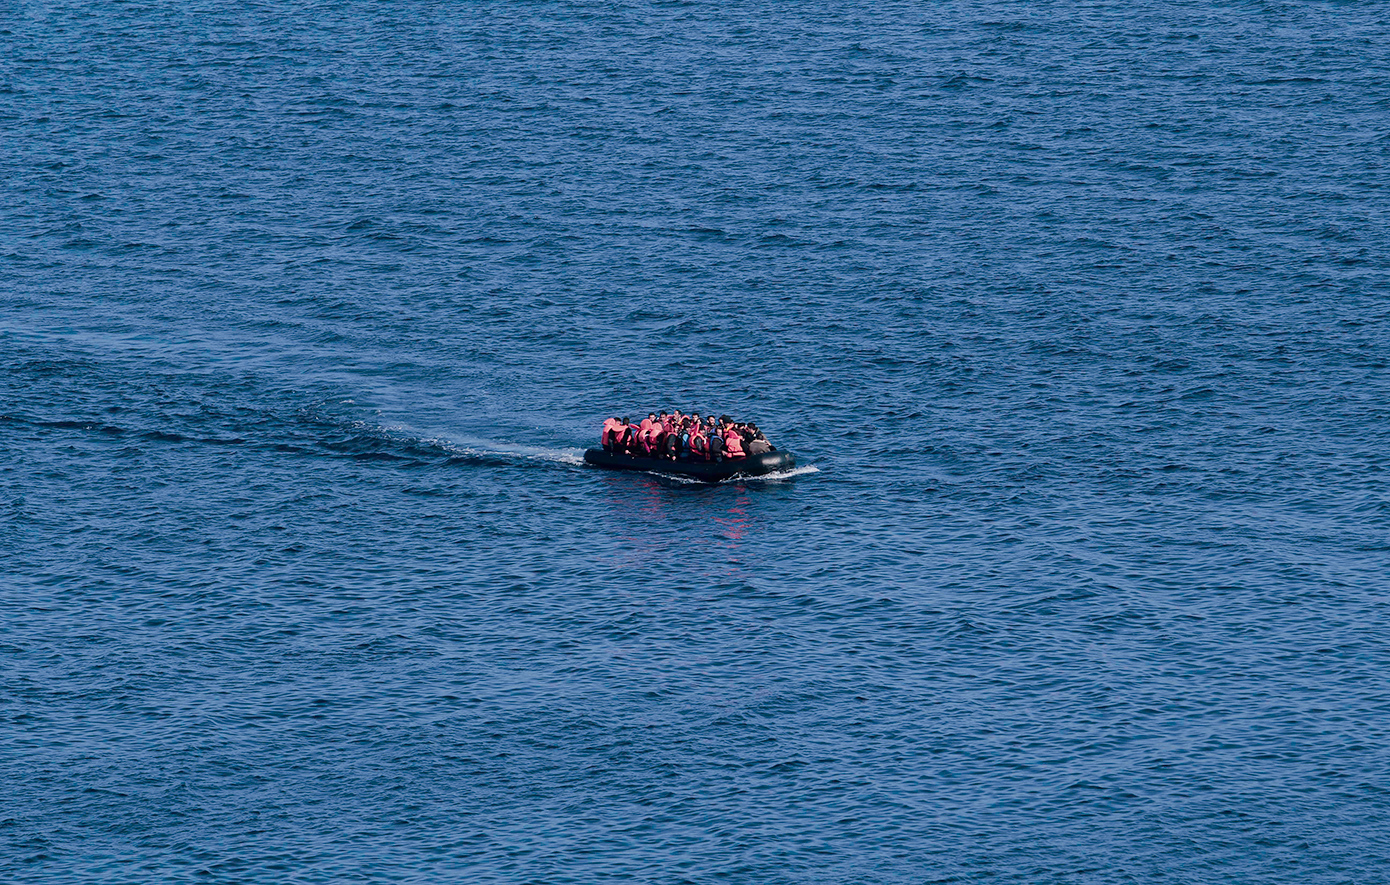 Χειροπέδες σε τρία άτομα που έπνιξαν πέντε μετανάστες, πετώντας τους στη θάλασσα